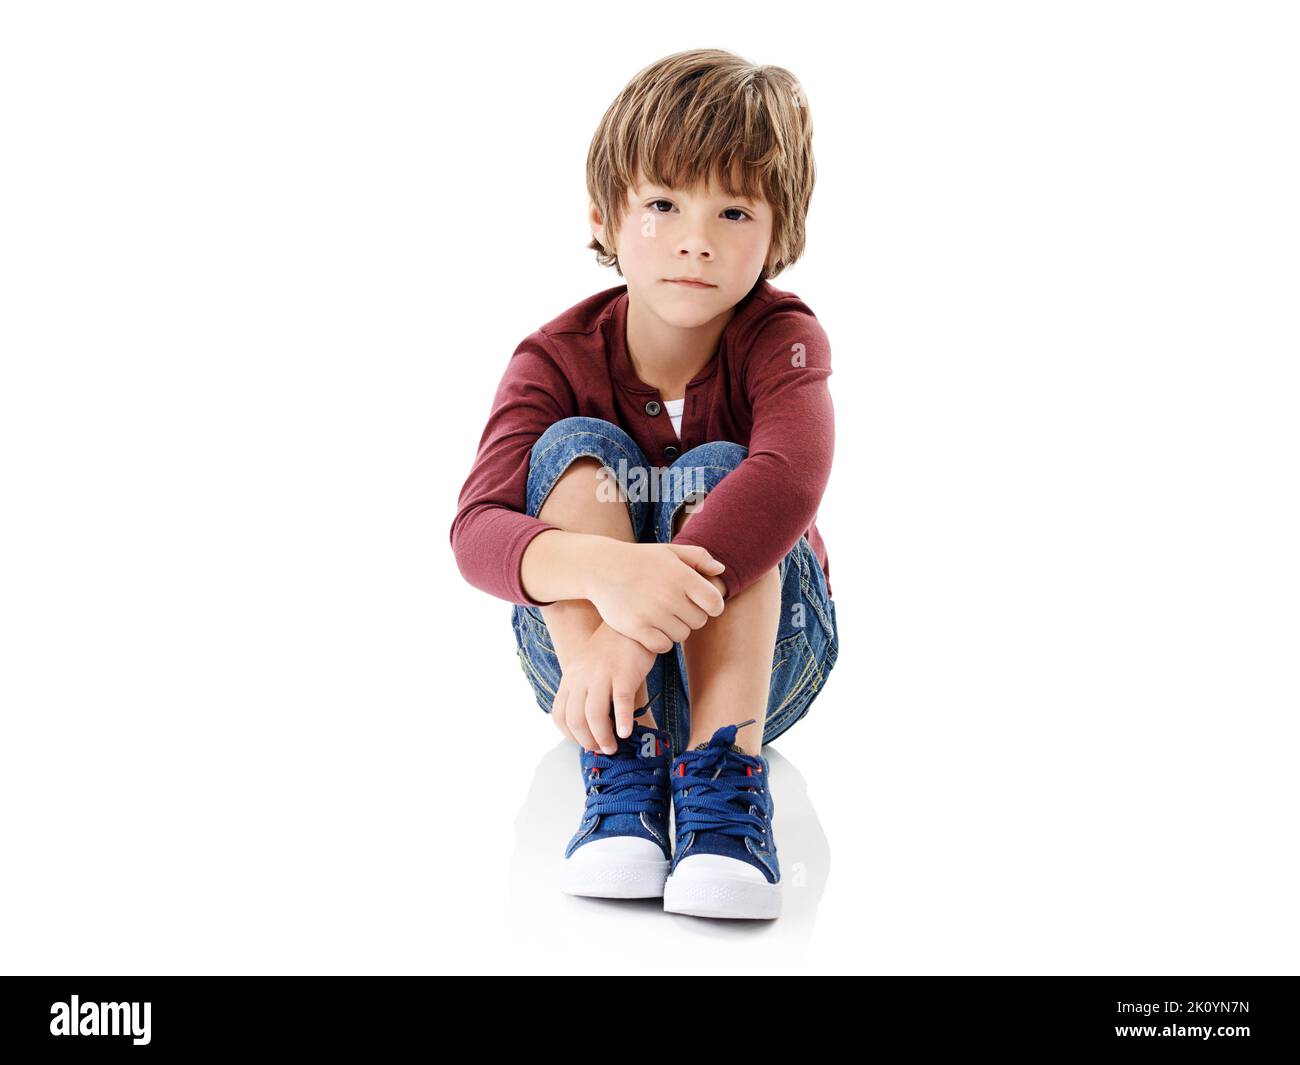 Wo sind alle? Studioaufnahme eines niedlichen kleinen Jungen, der seine Knie vor einem weißen Hintergrund umarmt. Stockfoto